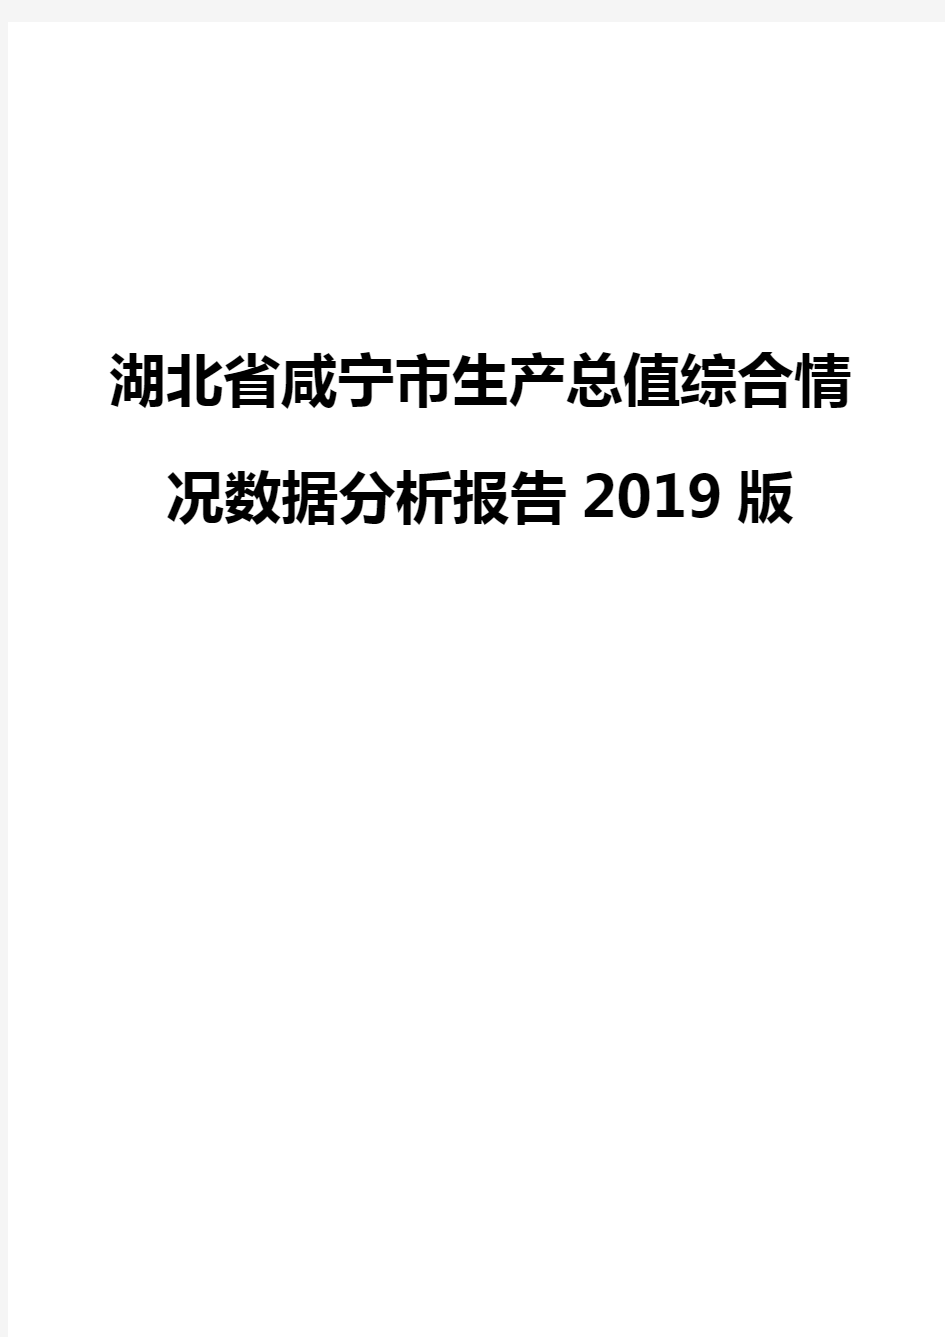 湖北省咸宁市生产总值综合情况数据分析报告2019版